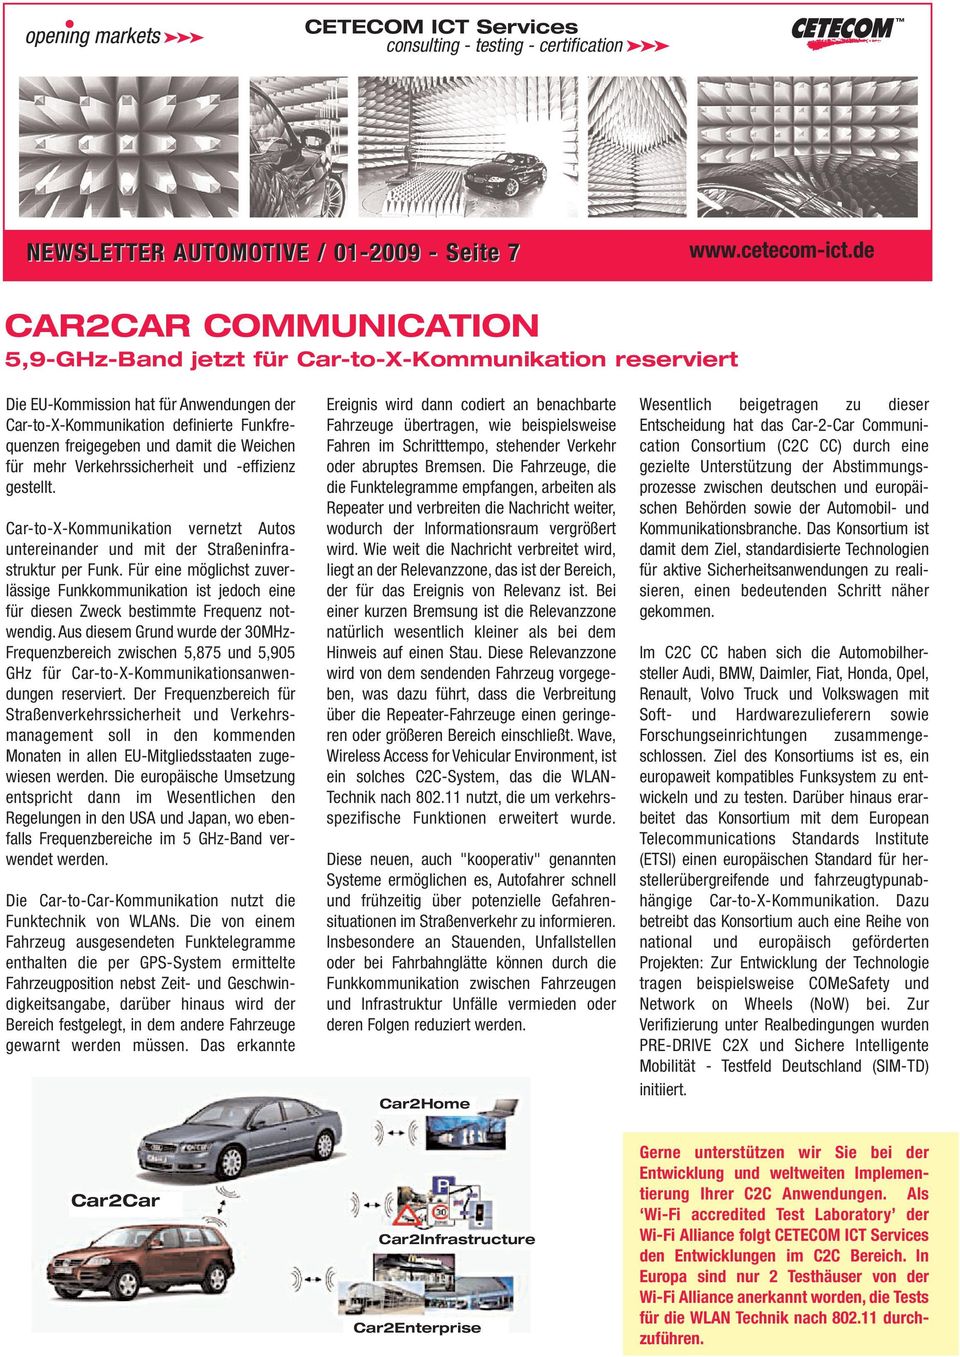 Car-to-X-Kommunikation vernetzt Autos untereinander und mit der Straßeninfrastruktur per Funk.